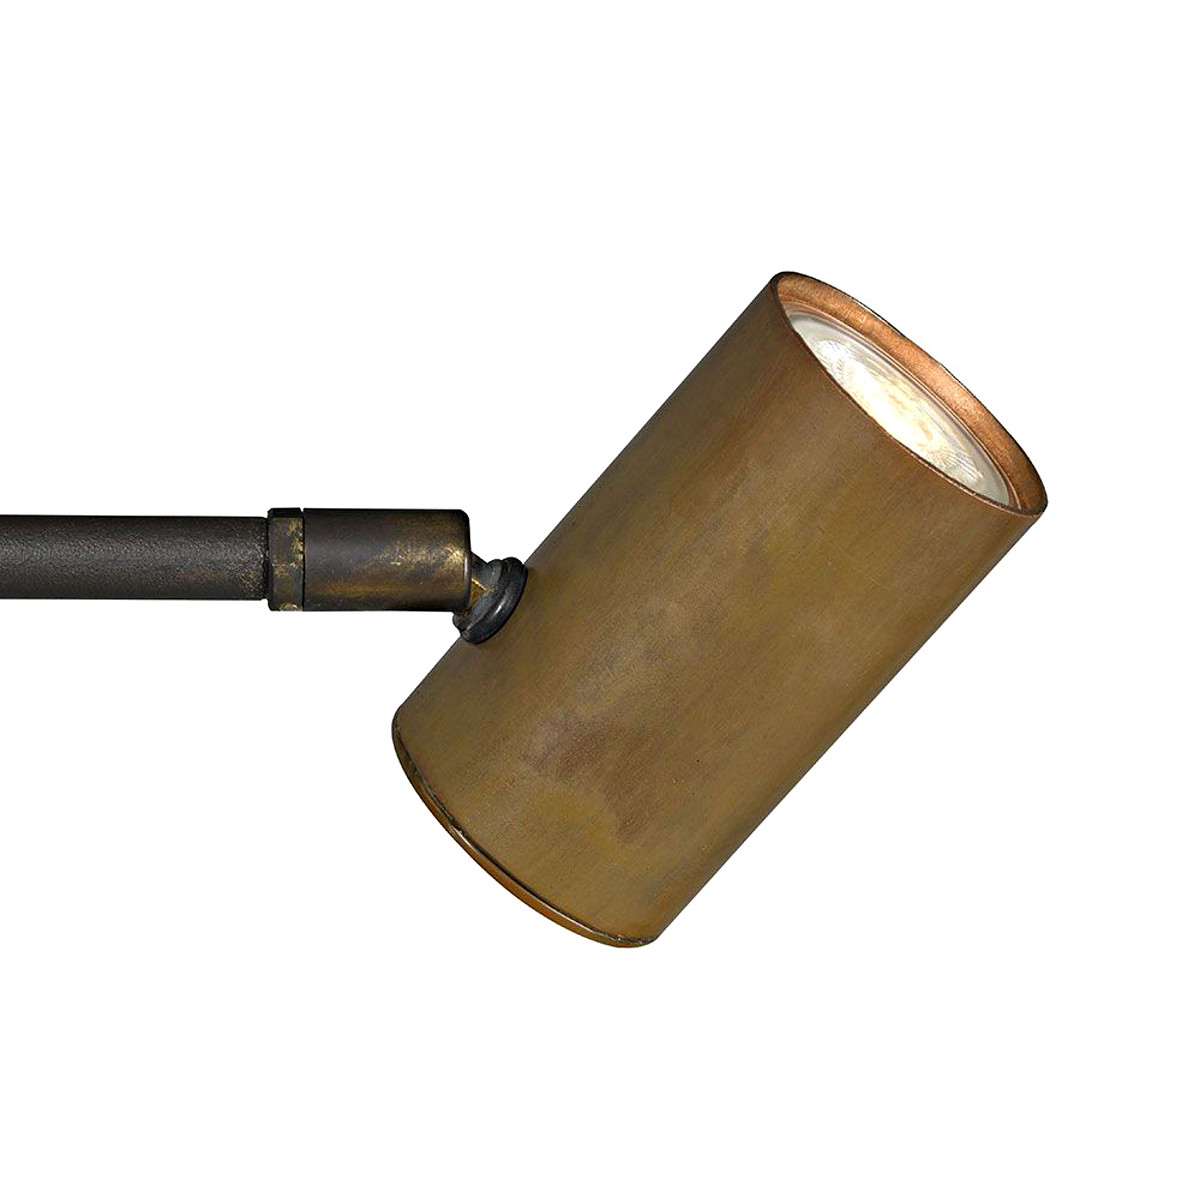 Strahler-Tischleuchte TOBINO mit Kupfer- oder Messingschirm: Kupfer patiniert